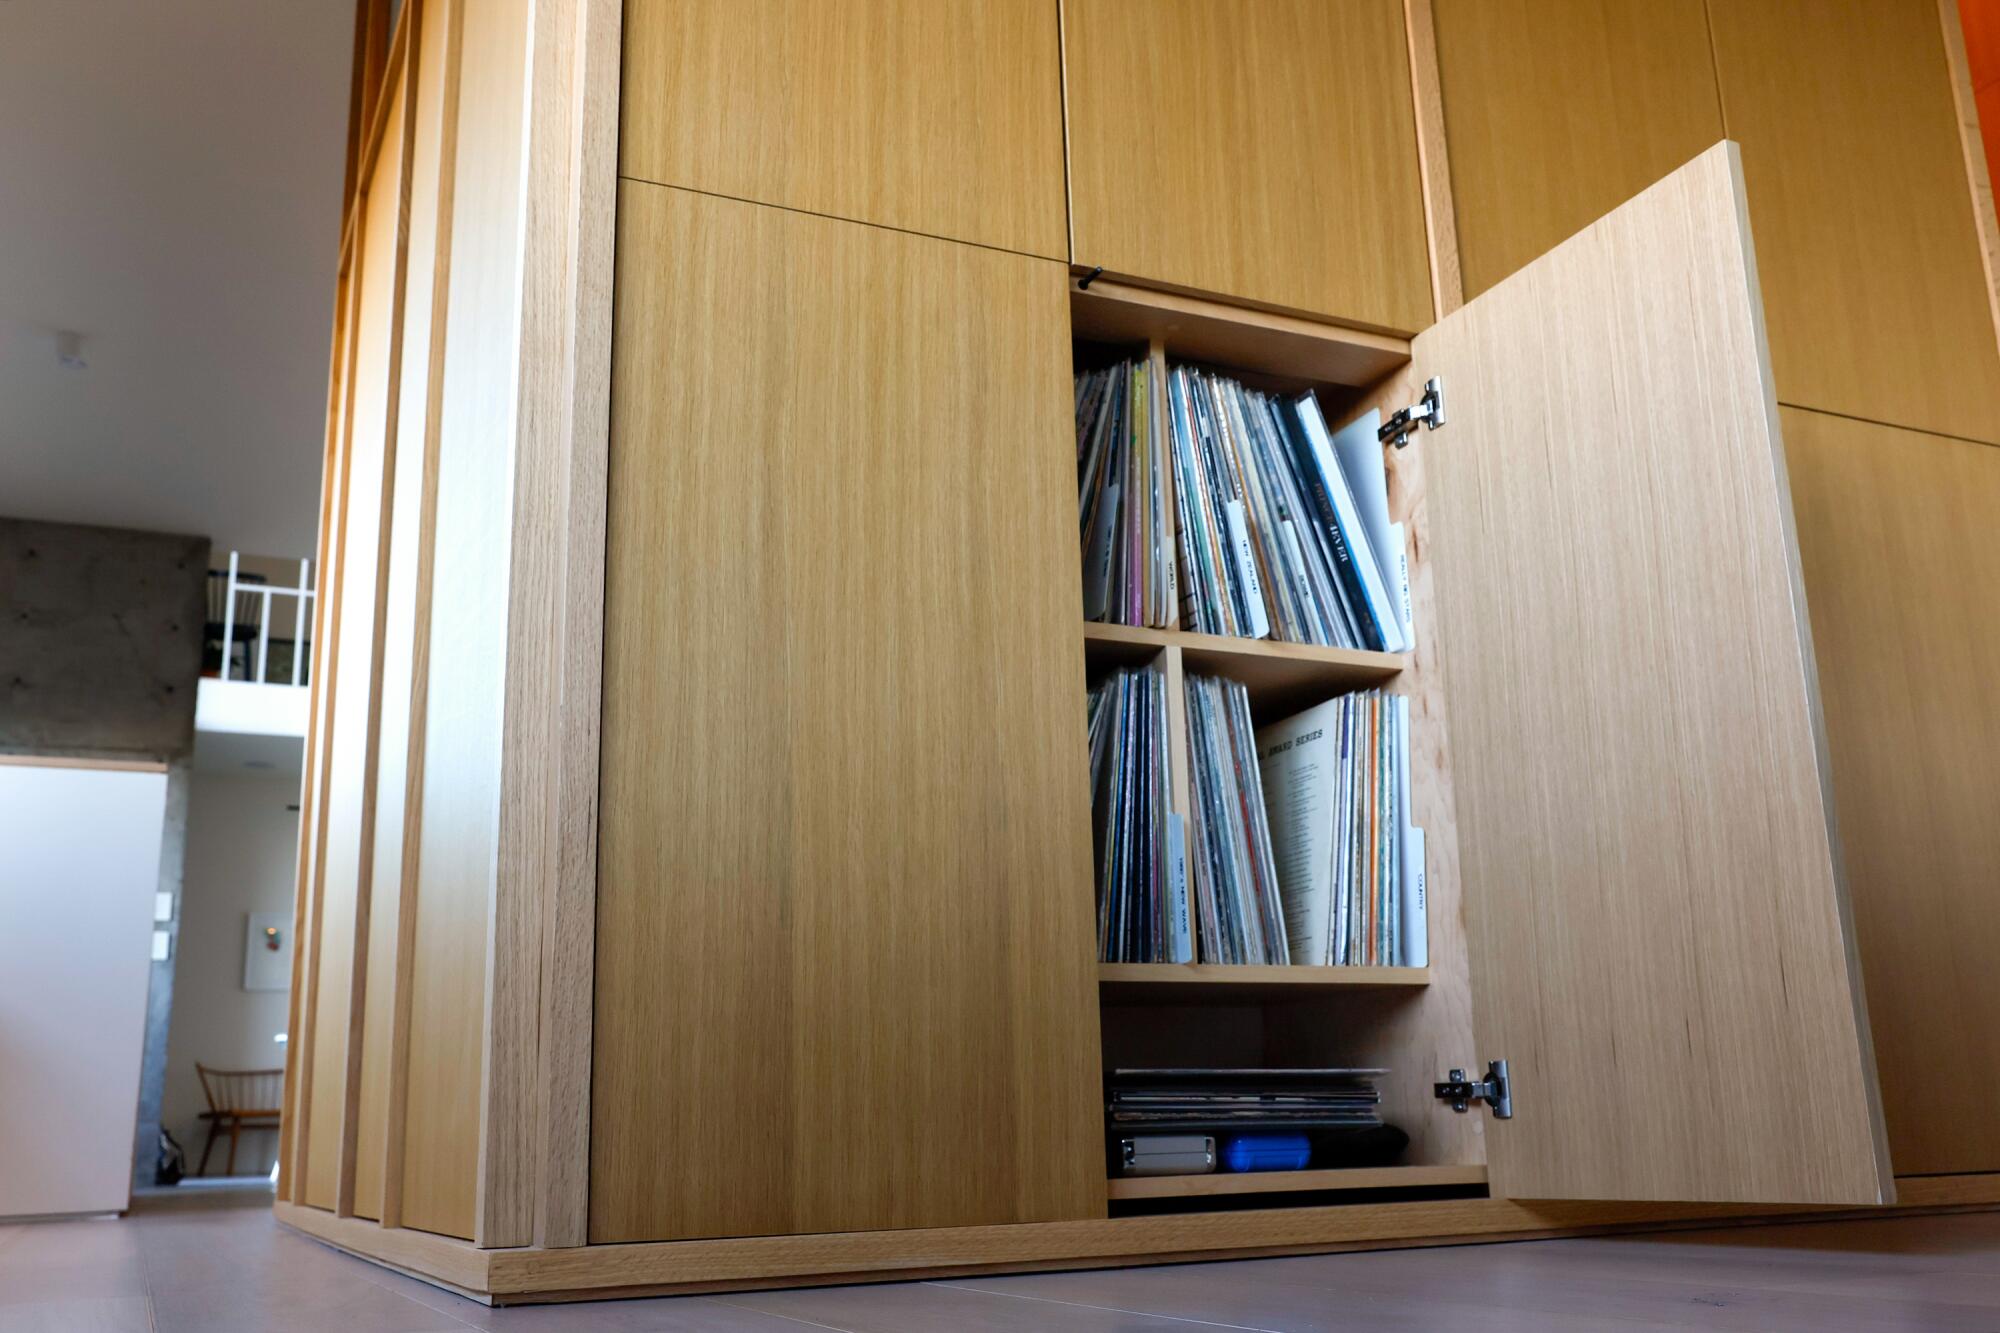 रिकॉर्ड हल्की लकड़ी की अलमारियों के पीछे छिपे हुए हैं जो दीवारों में छुपे हुए लगते हैं।